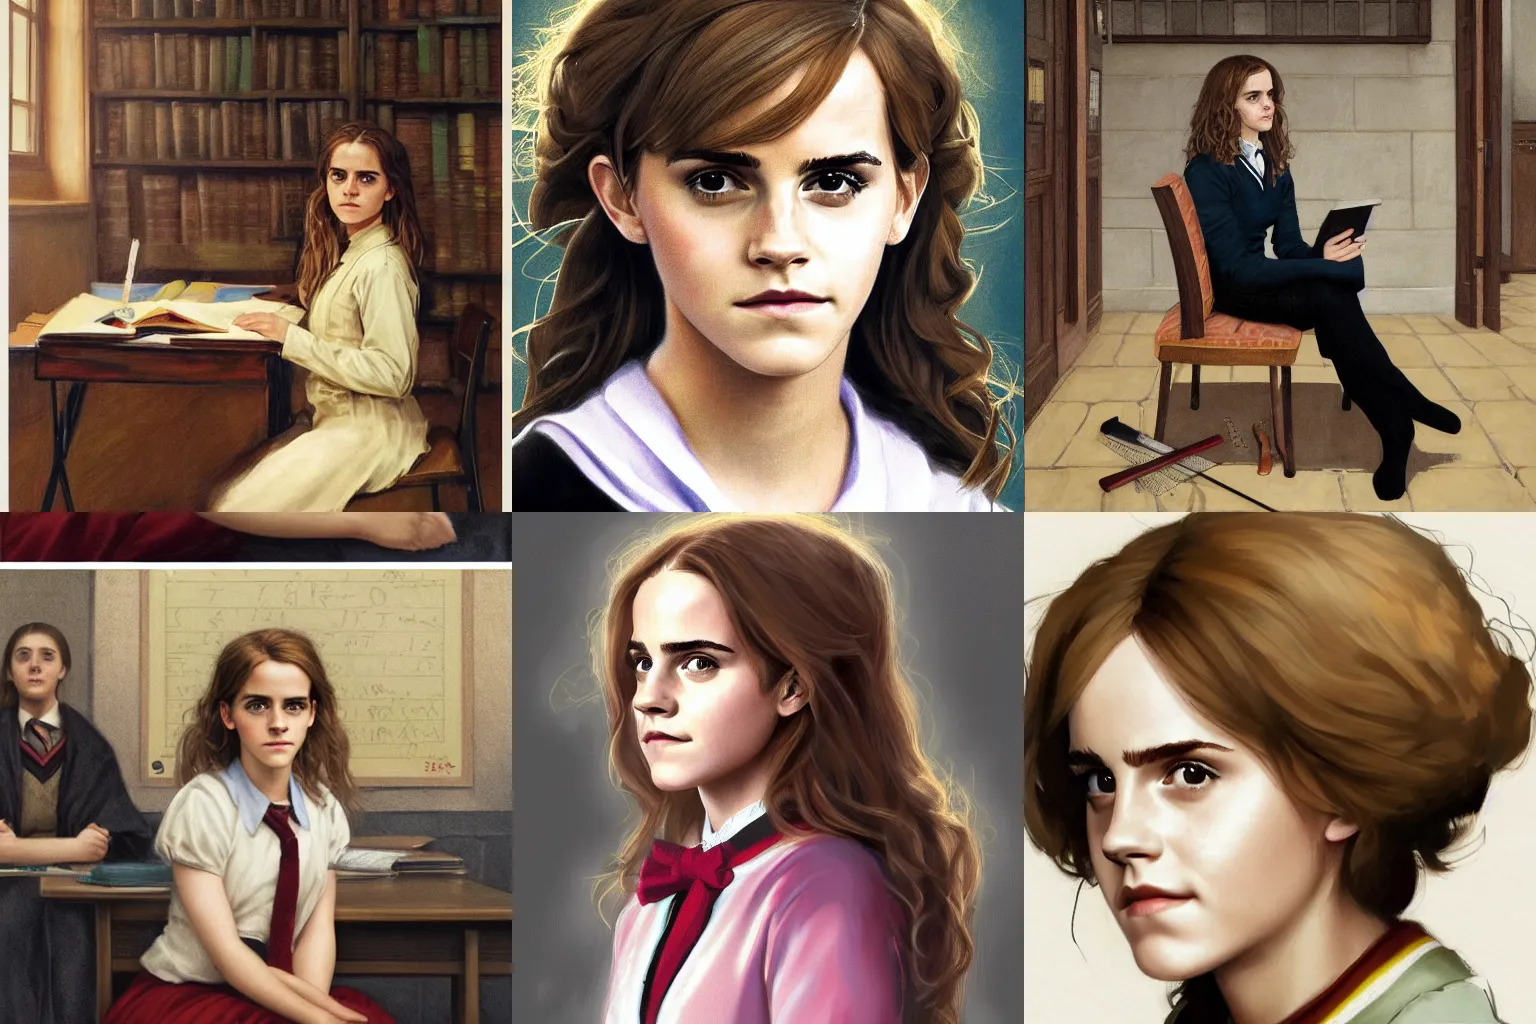 Prompt: portrait of Emma Watson as Hermione Granger sitting in a classroom, art by Kenne Gregoire, trending on artstation